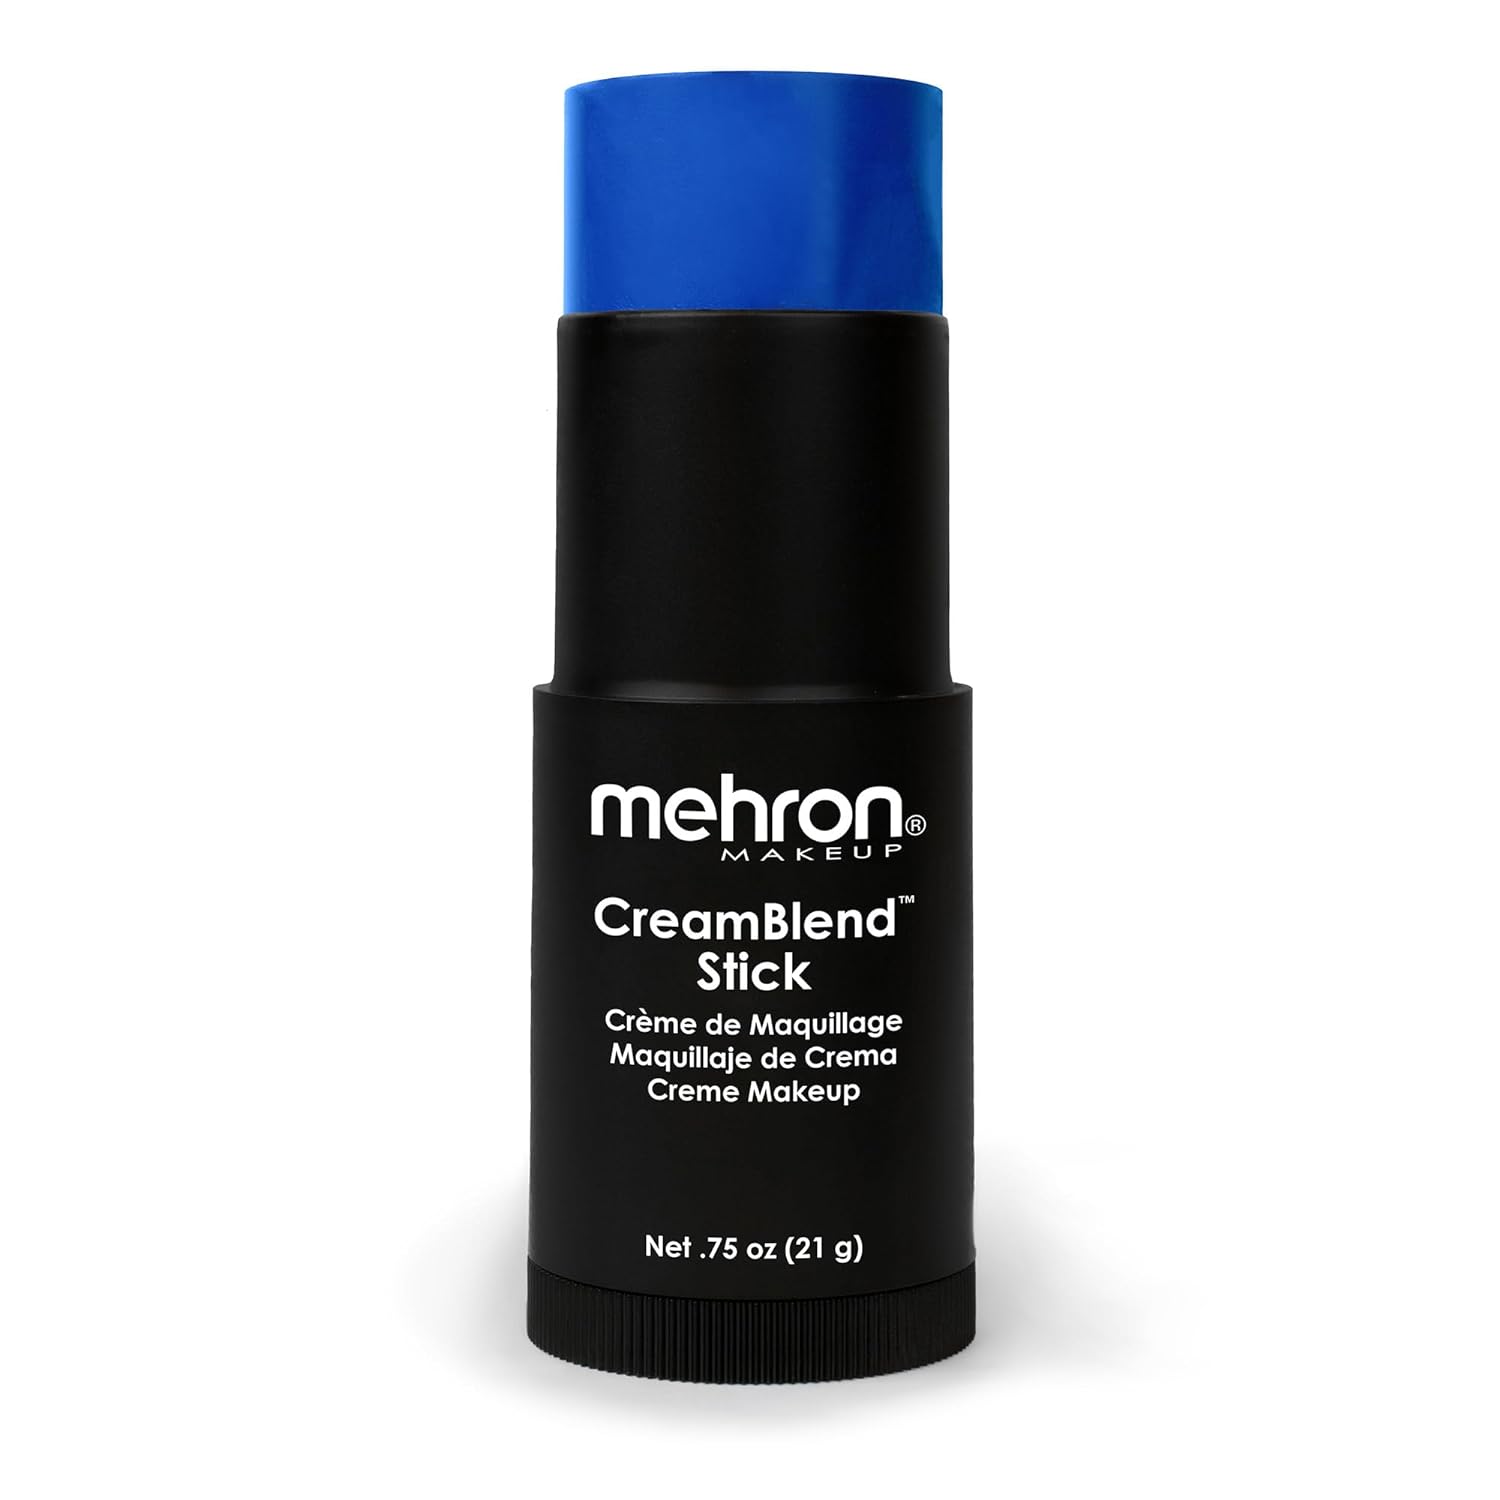 Mehron Makeup CreamBlend Stick | Face Paint, Body Paint, & Foundation Cream Makeup | Body Paint Stick .75  (21 g) (Blue)